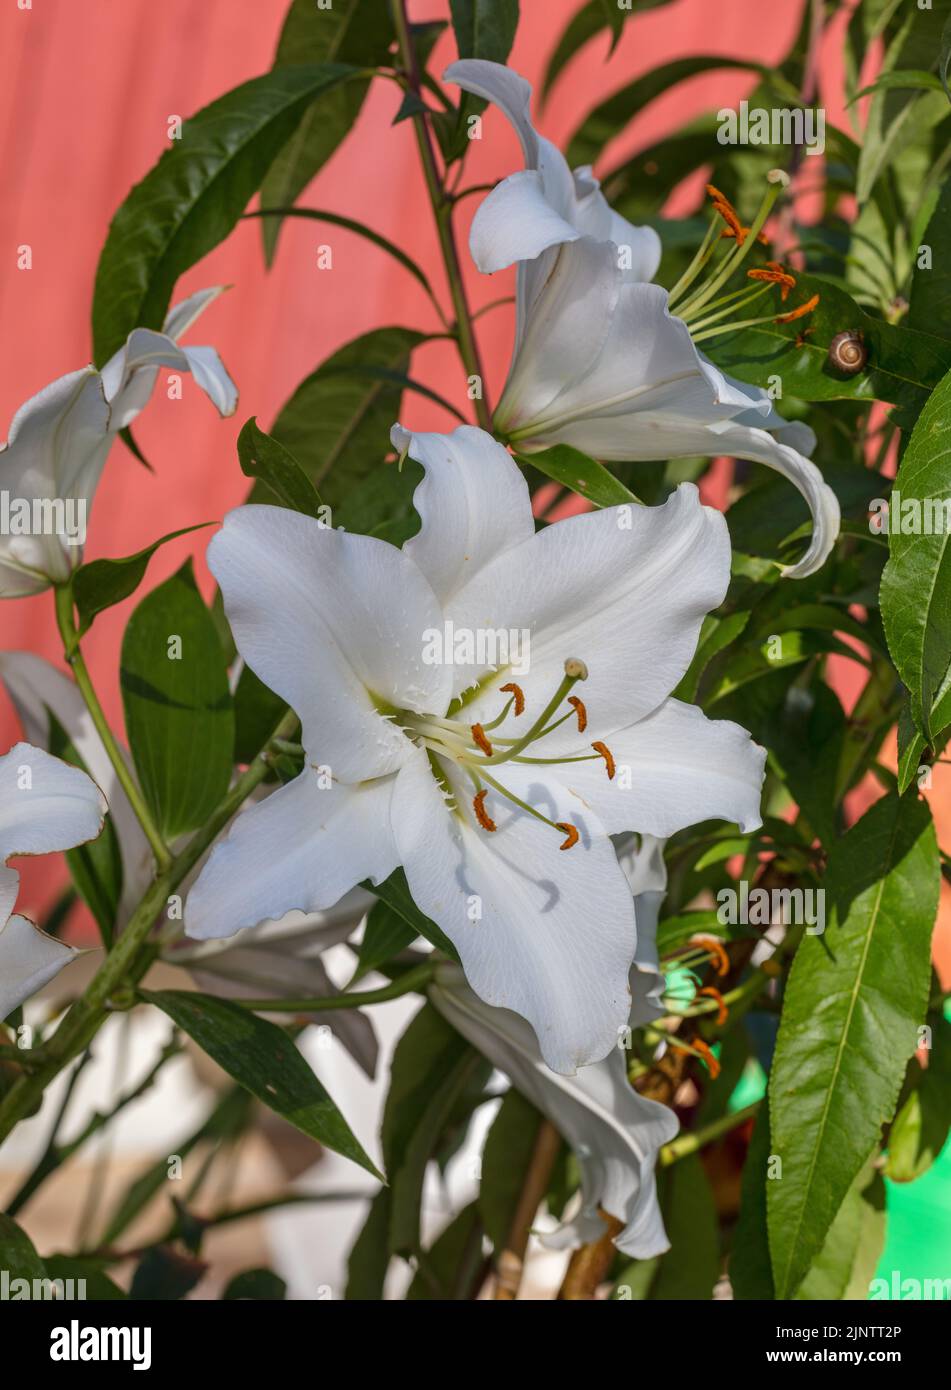 'Rialto' ibrido orientale, Orientlilja (Lilium orientalis) Foto Stock